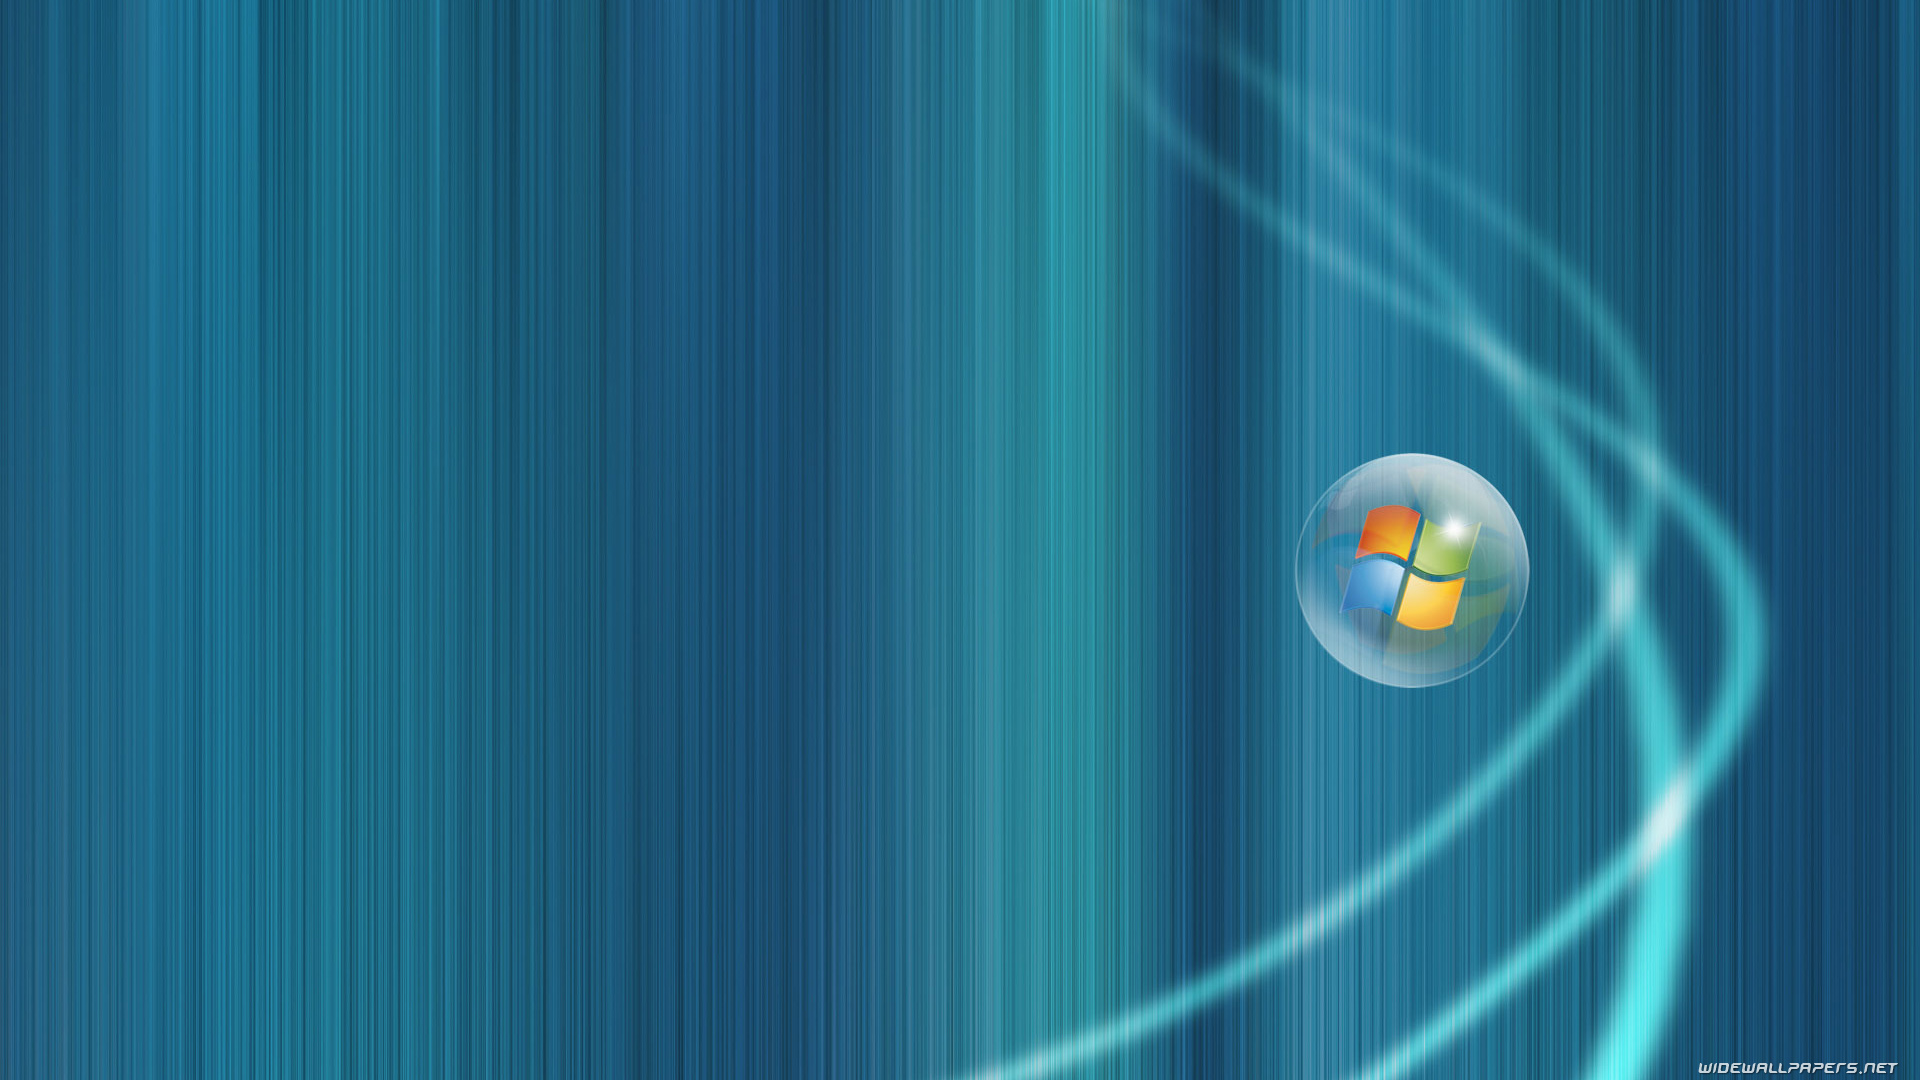 Windows Vista Desktop Wallpapers Hd And Wide Wallpapers